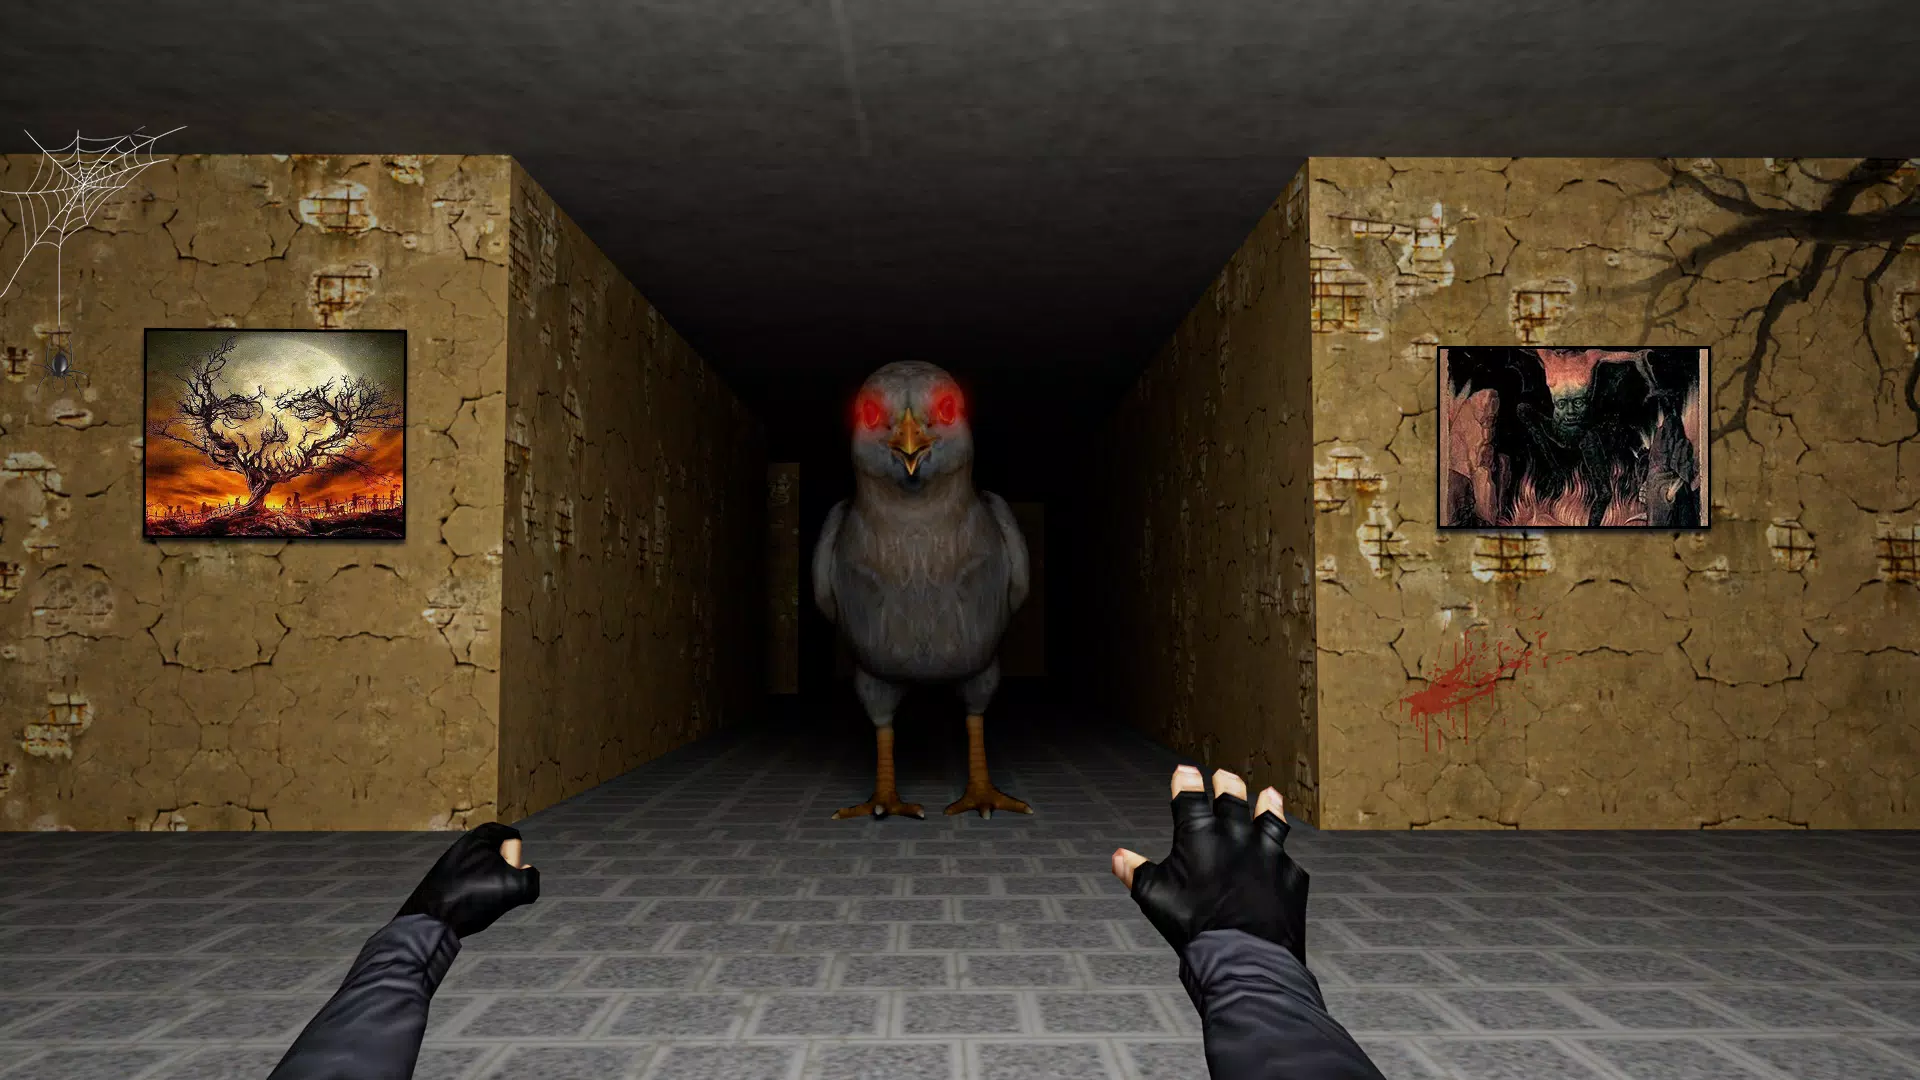 A Fuga das Aves Raras APK (Android Game) - Baixar Grátis